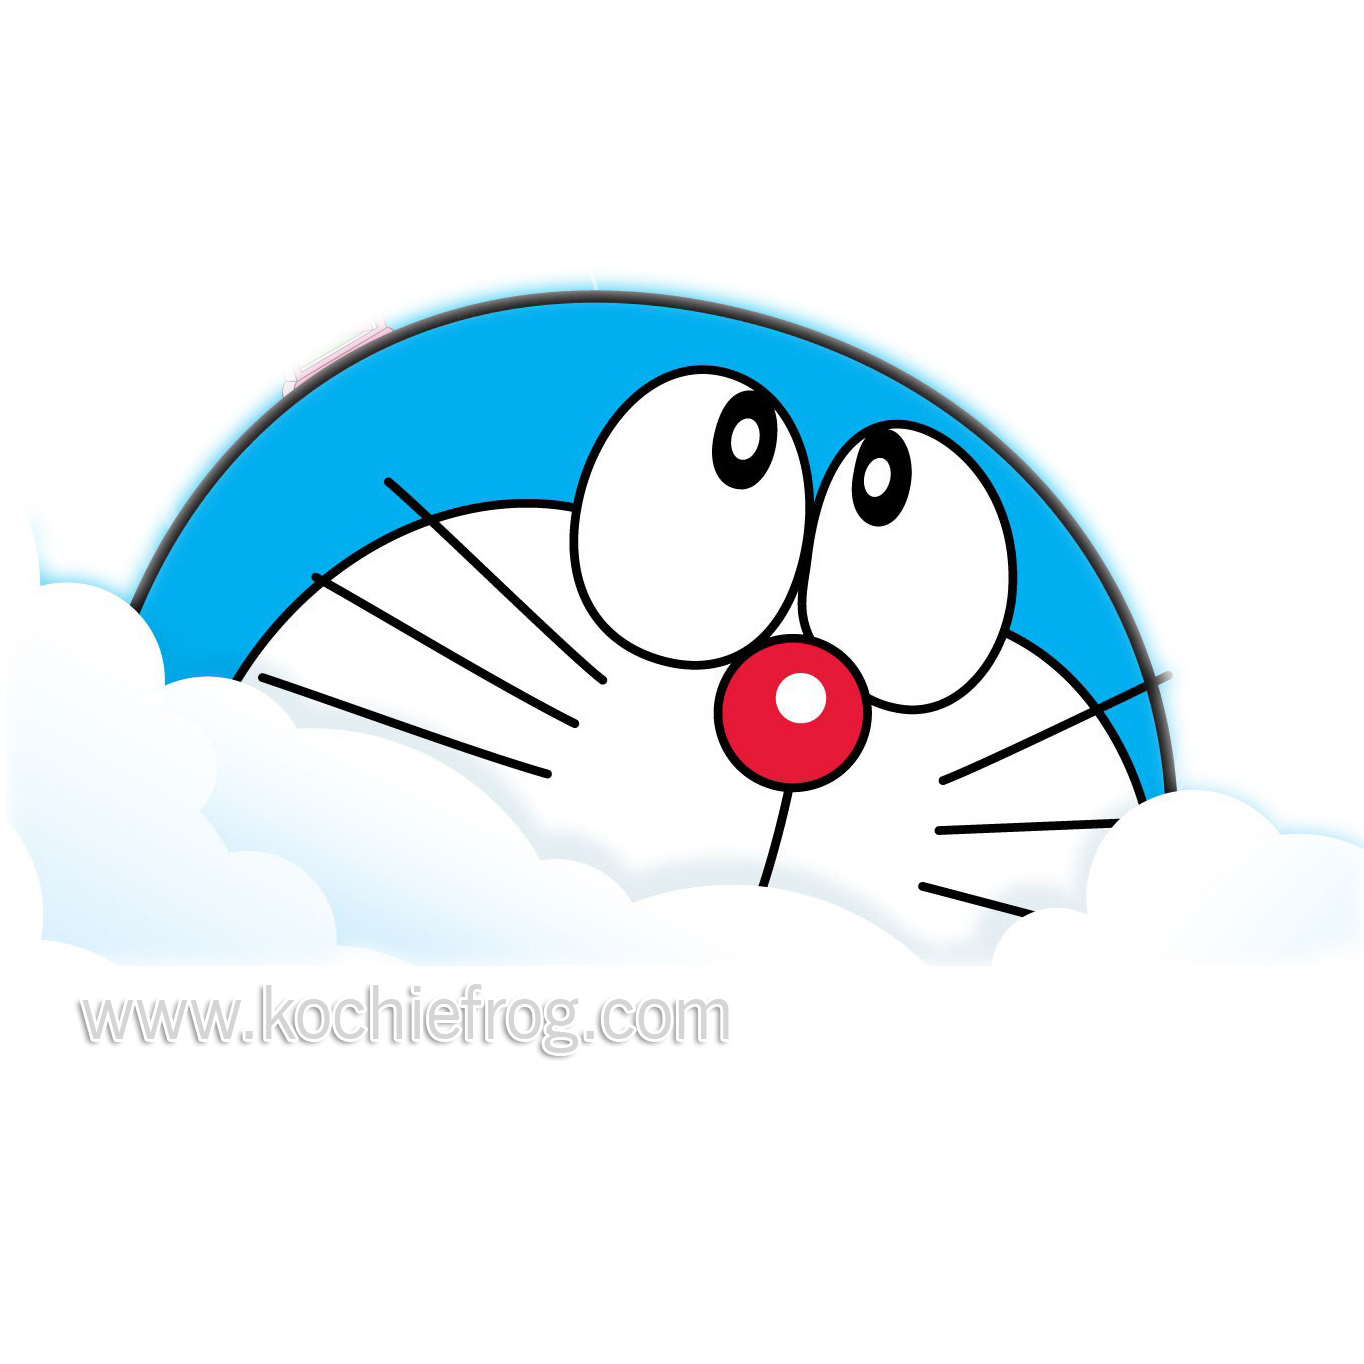 54 Gambar Dp Bbm Doraemon Bergerak Kumpulan Gambar DP BBM